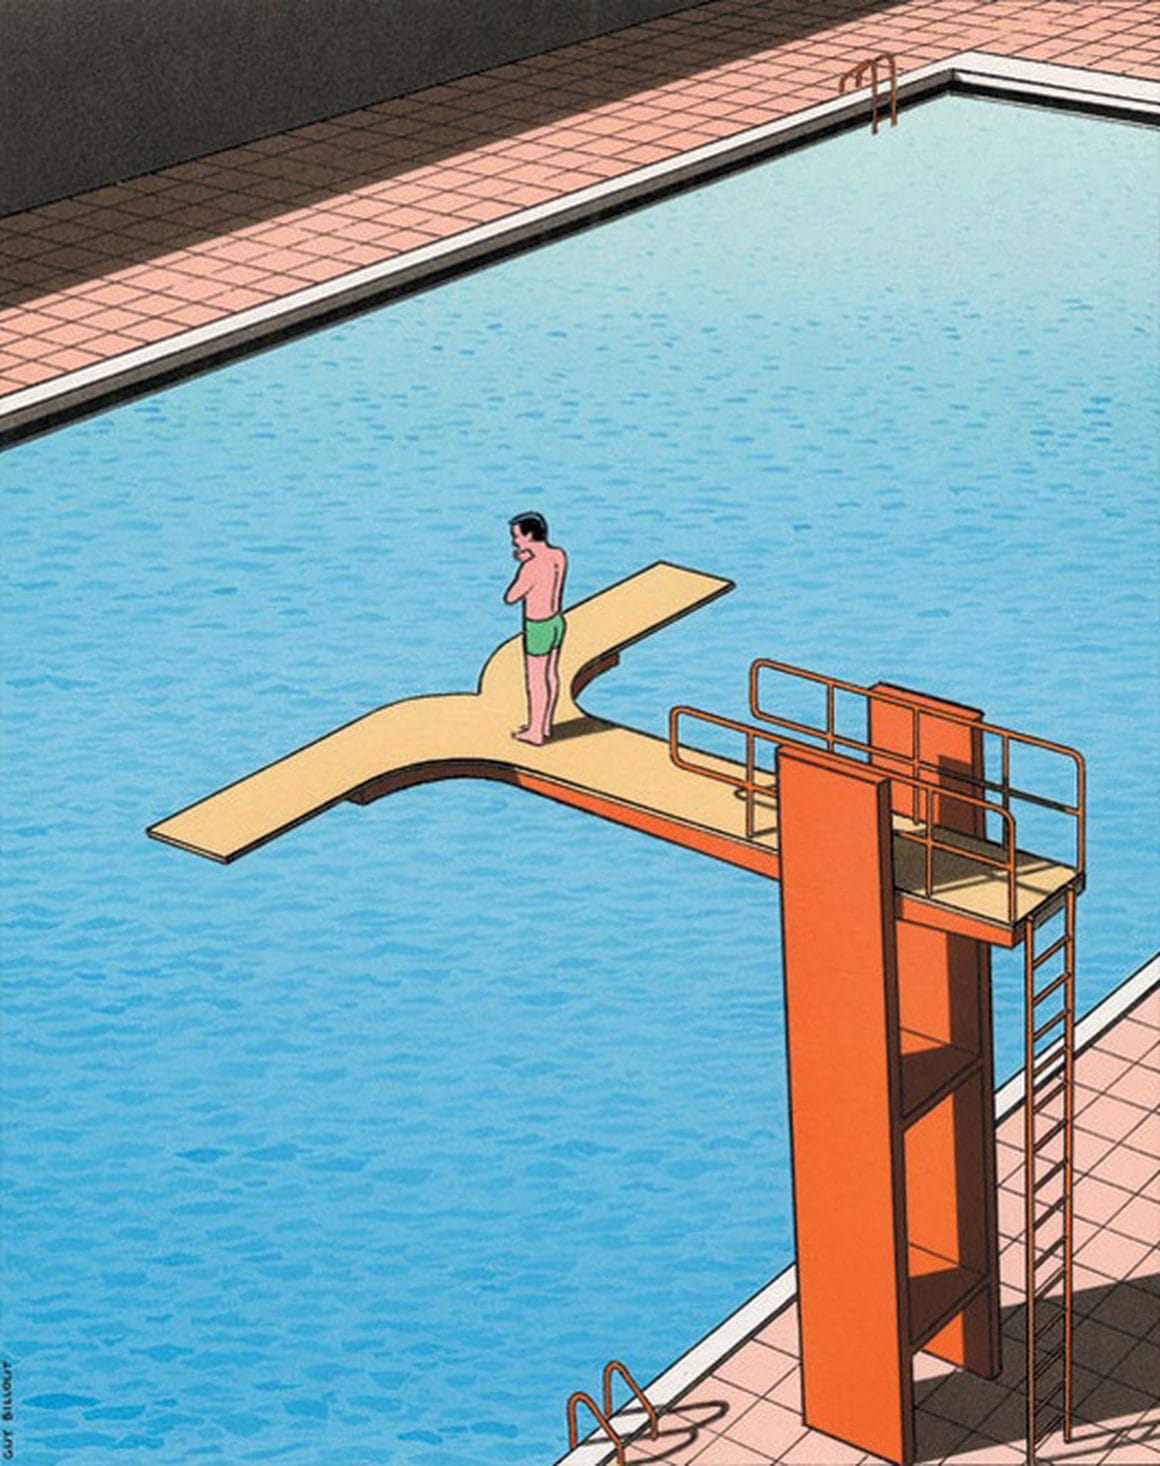 Œuvre de Billout où on voit un homme au bord d'un plongeoir d'une piscine qui offre la possibilité de sauter à droite ou à gauche